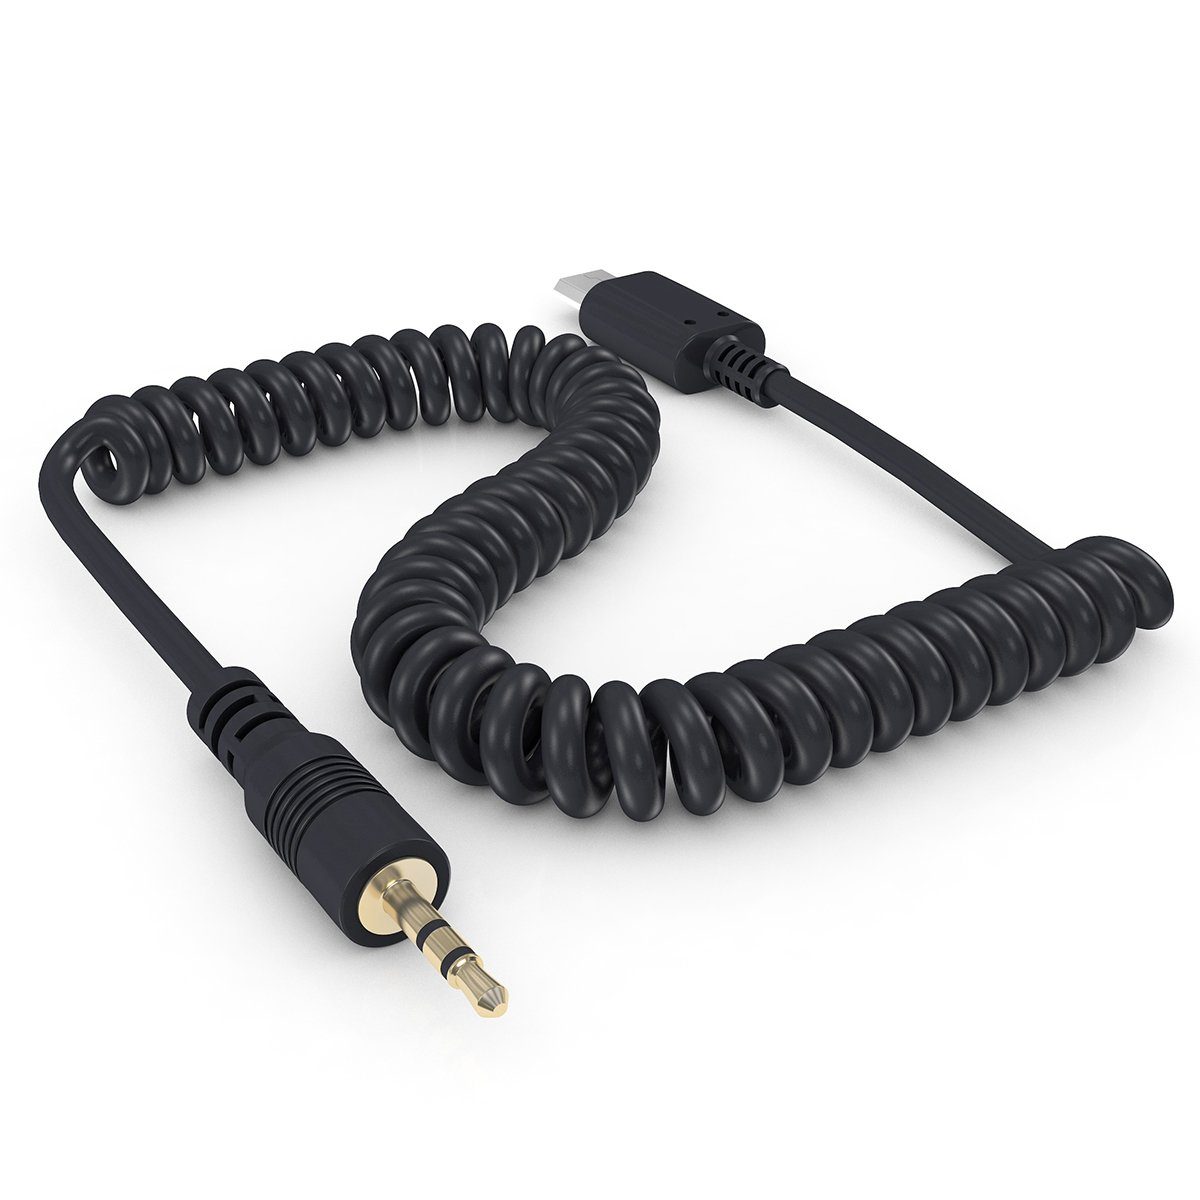 Kabel-Fernauslöser Adapterkabel z.B. Spiral Sony S2 ayex für Fernauslöser